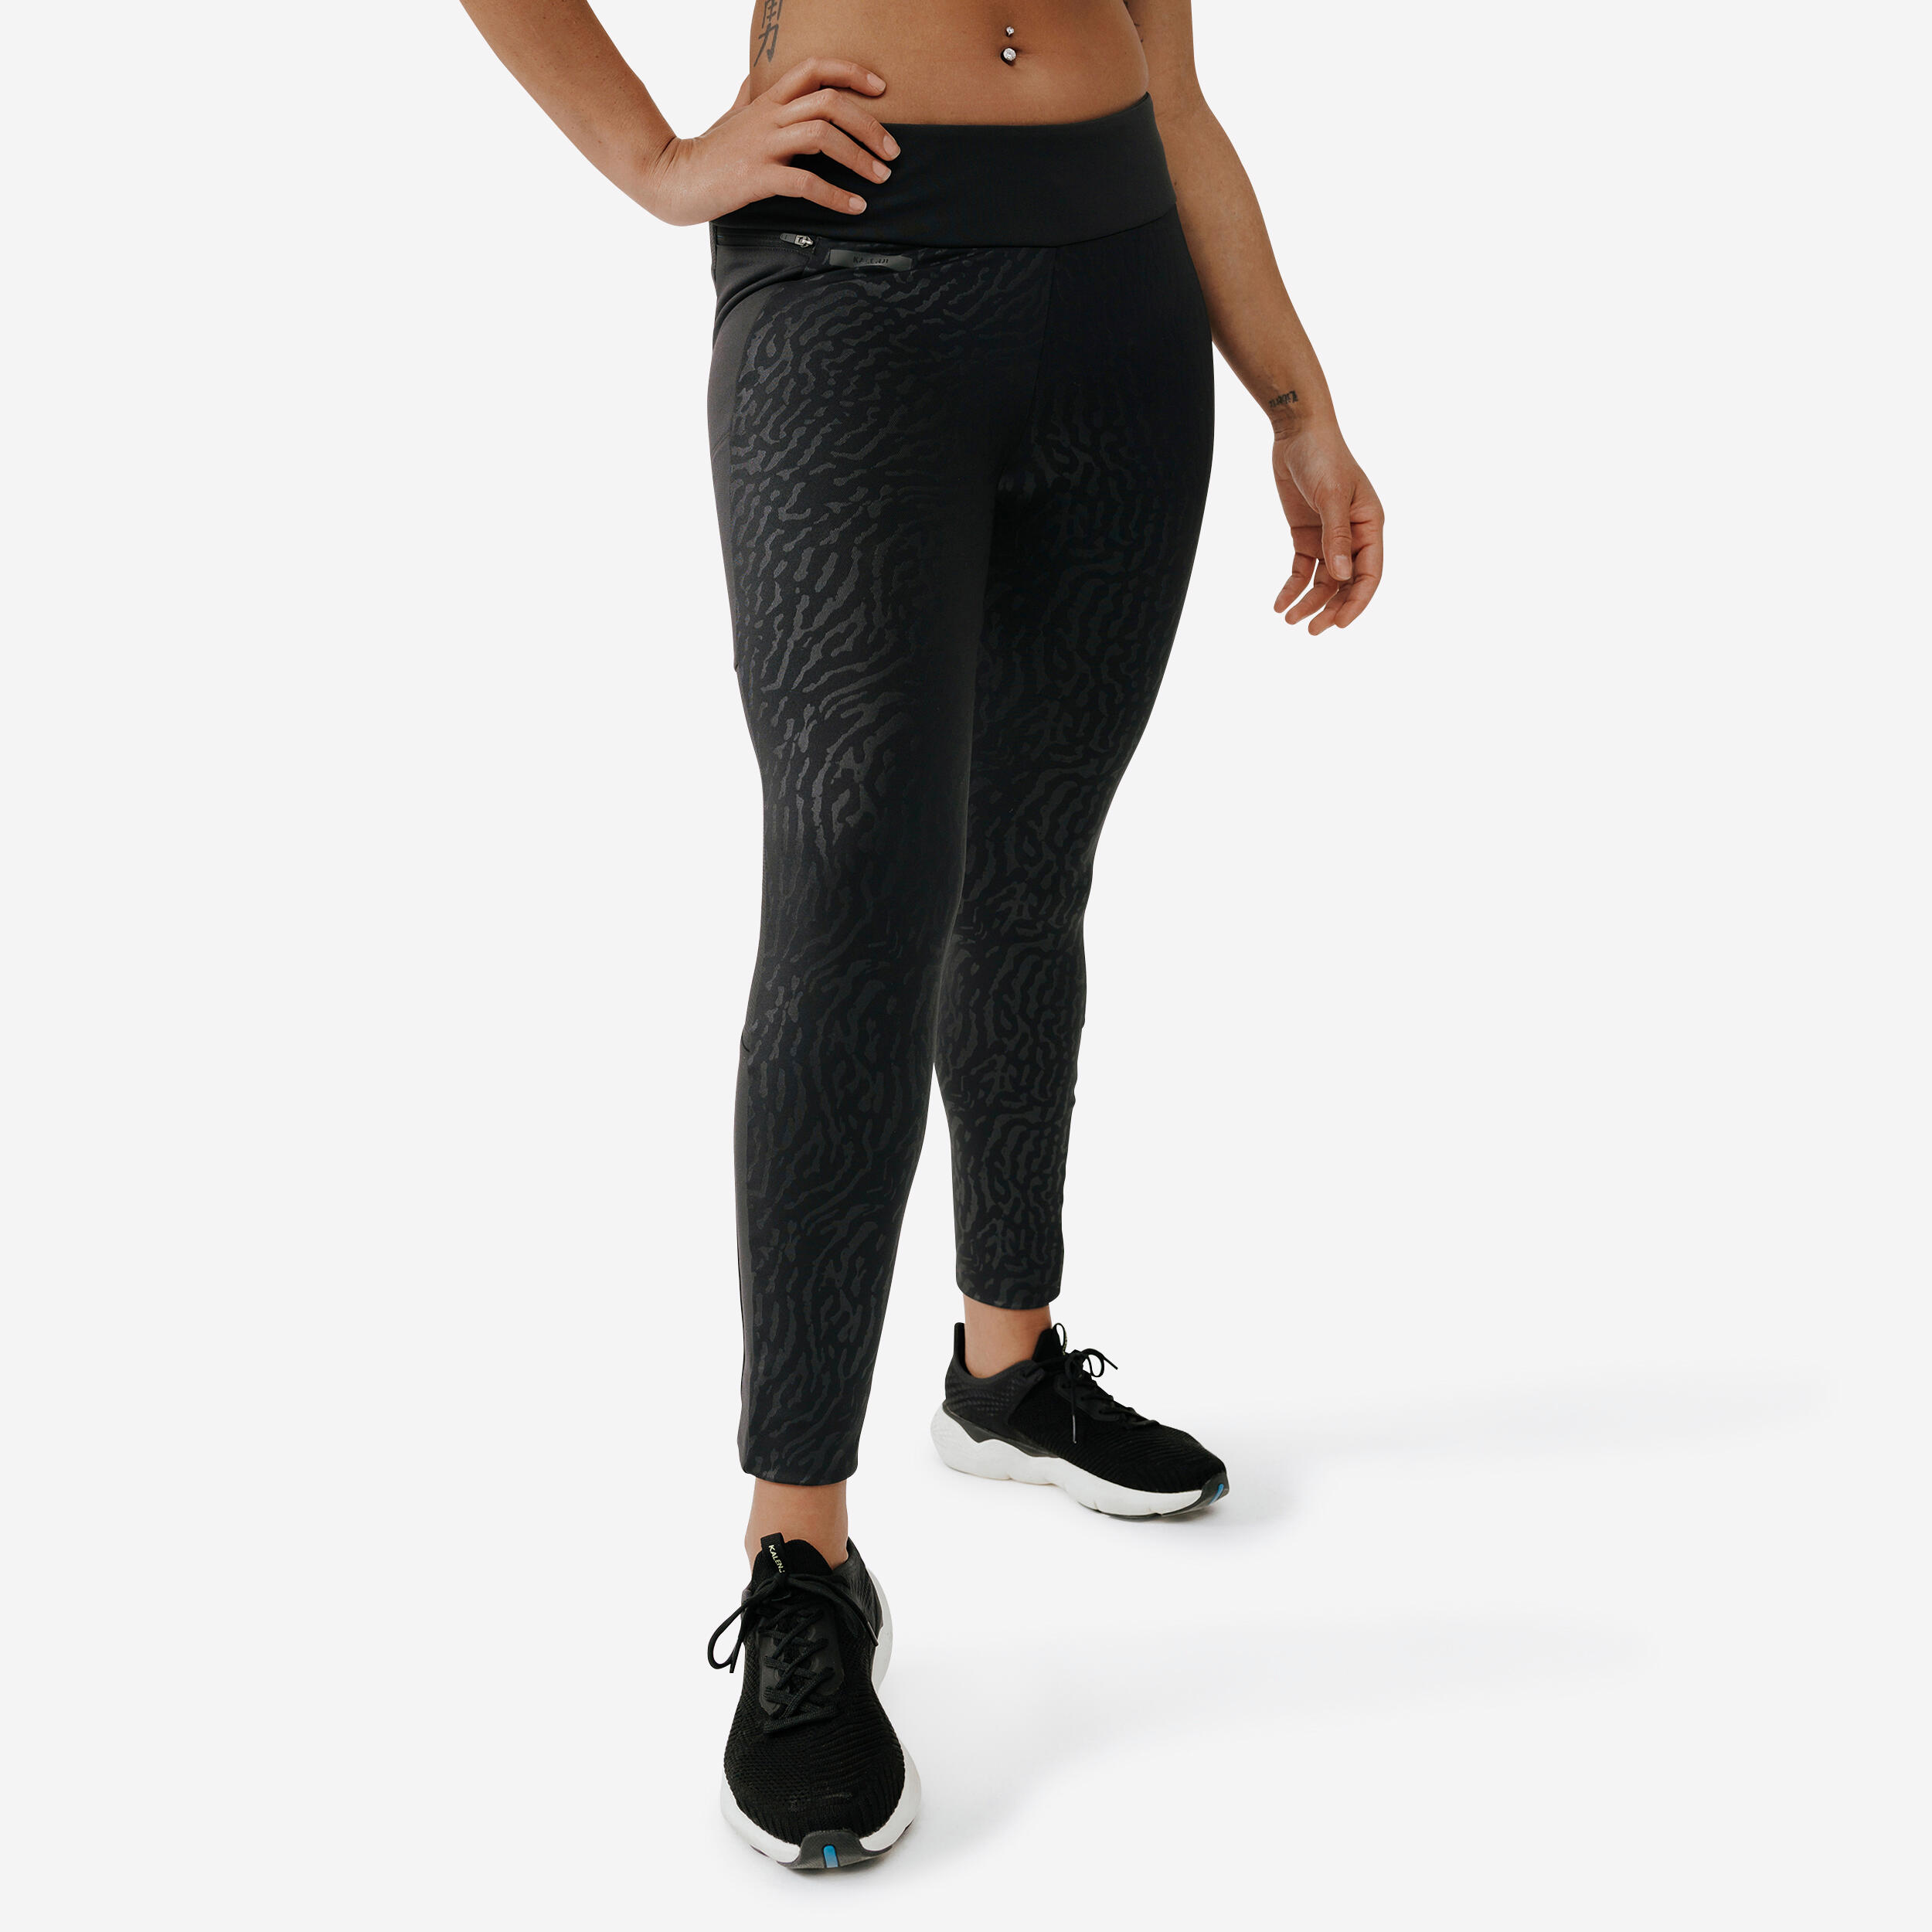 Women’s Long Running Leggings - Warm+ Black